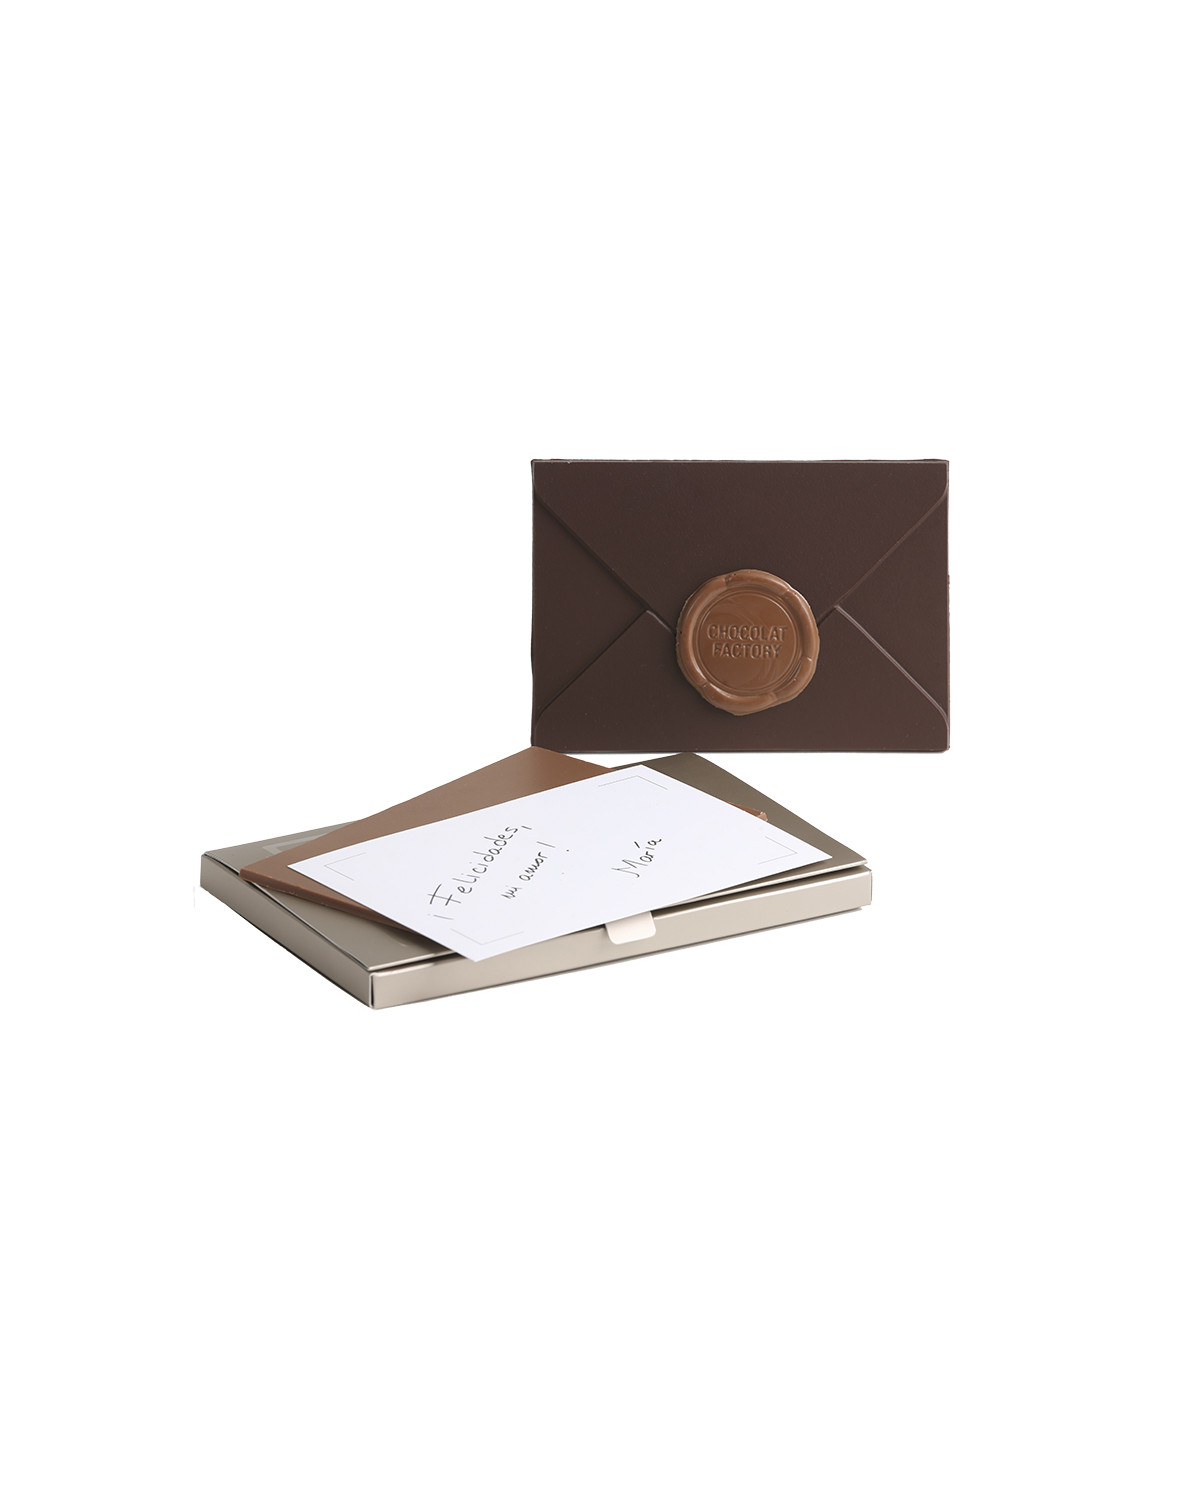 The envelope: sobre de xocolata